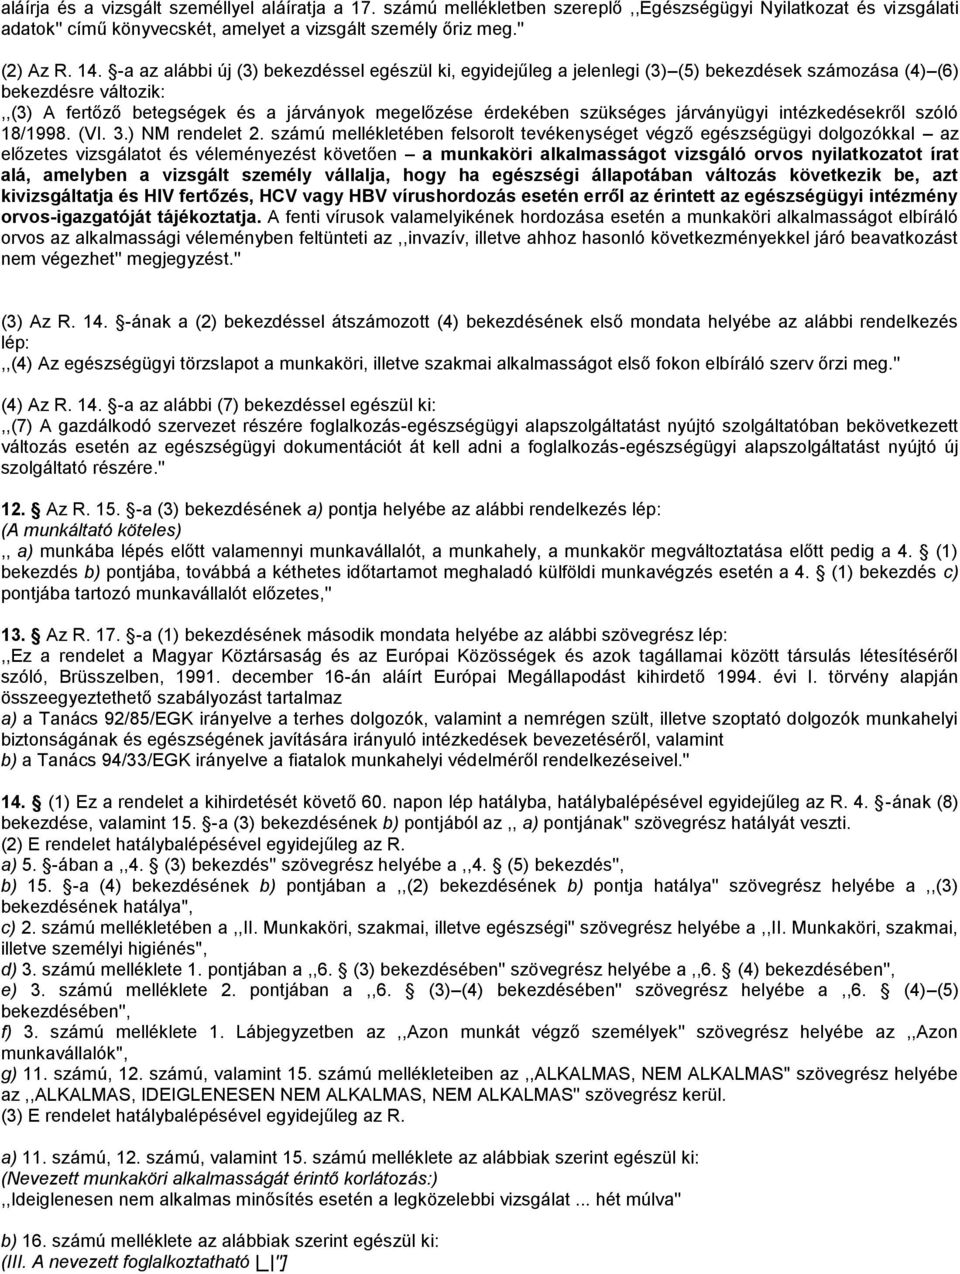 járványügyi intézkedésekről szóló 18/1998. (VI. 3.) NM rendelet 2.